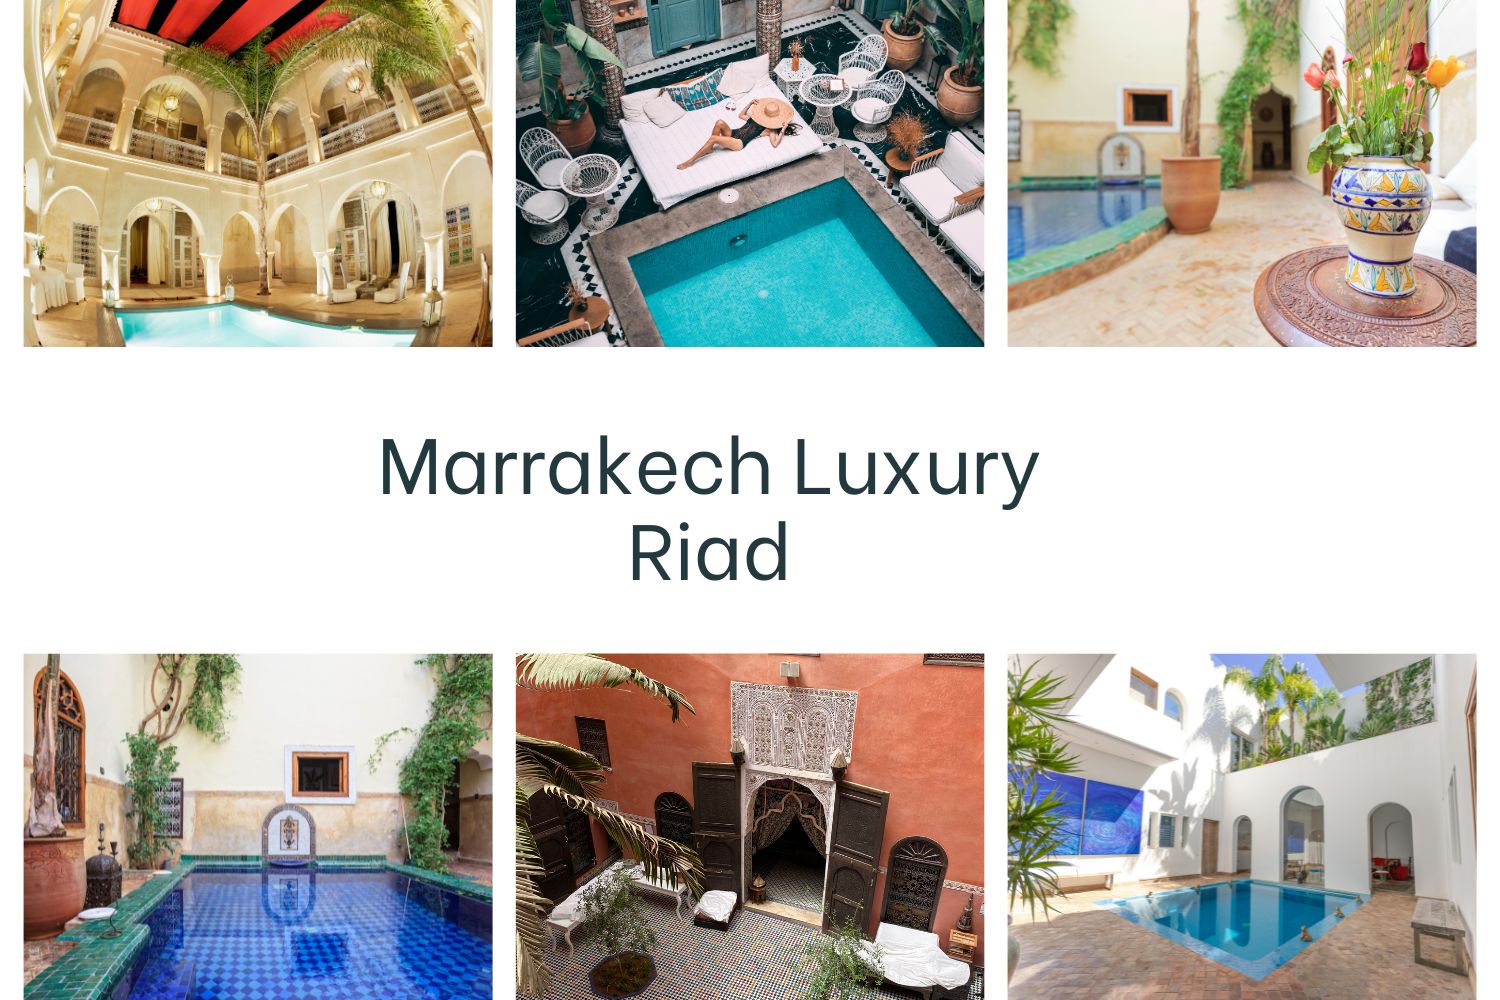 Marrakech Luxury Riad